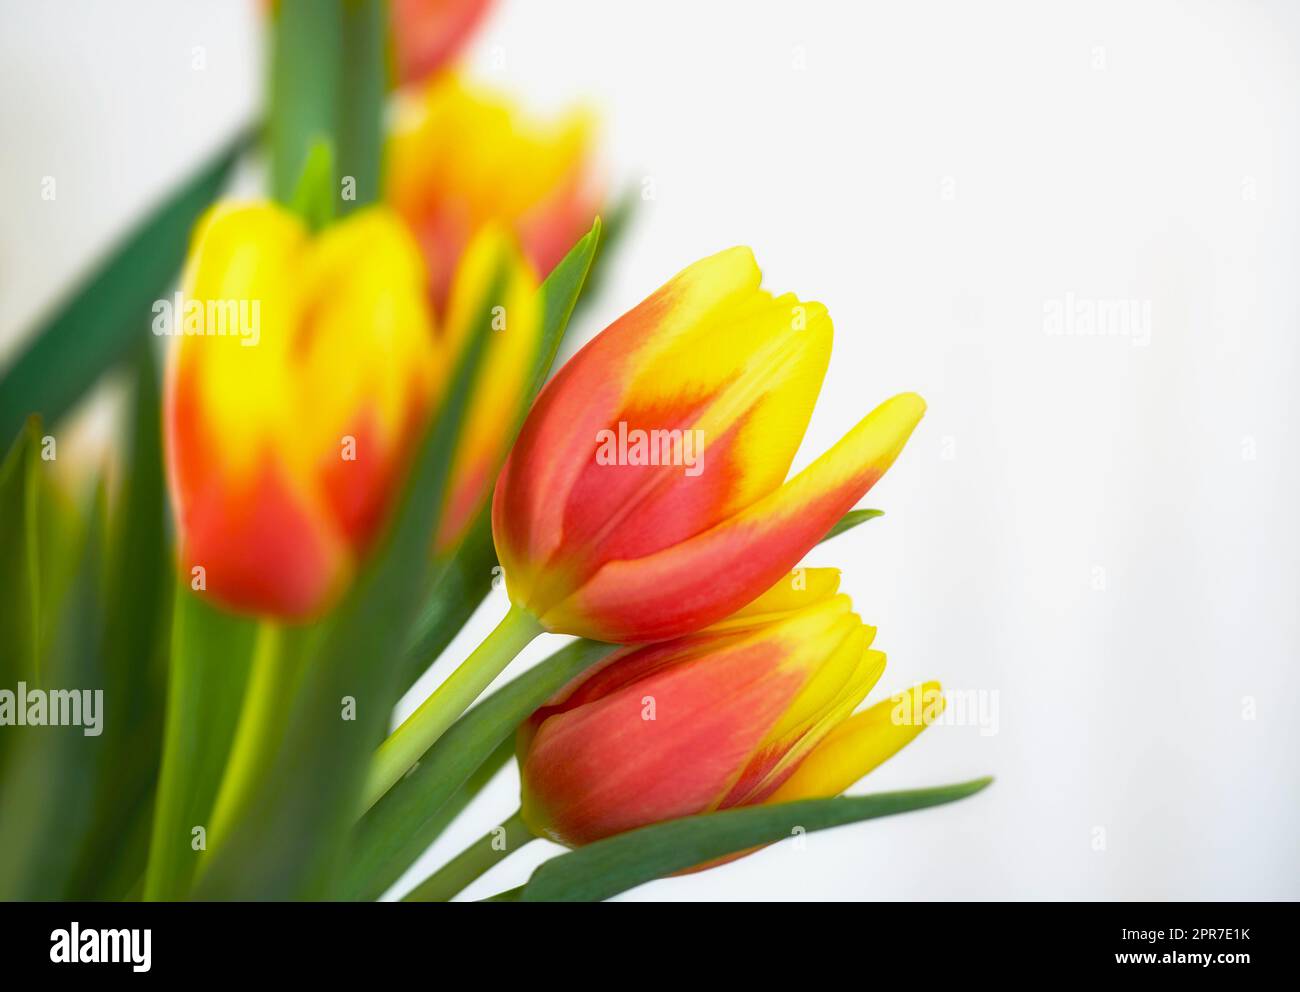 Tulipanes naranjas y amarillos frescos sobre un fondo blanco. Primer plano de ramo de hermosas flores con pétalos vibrantes y hojas verdes. Ramo floreciente que simboliza la esperanza y el amor para el día de San Valentín Foto de stock